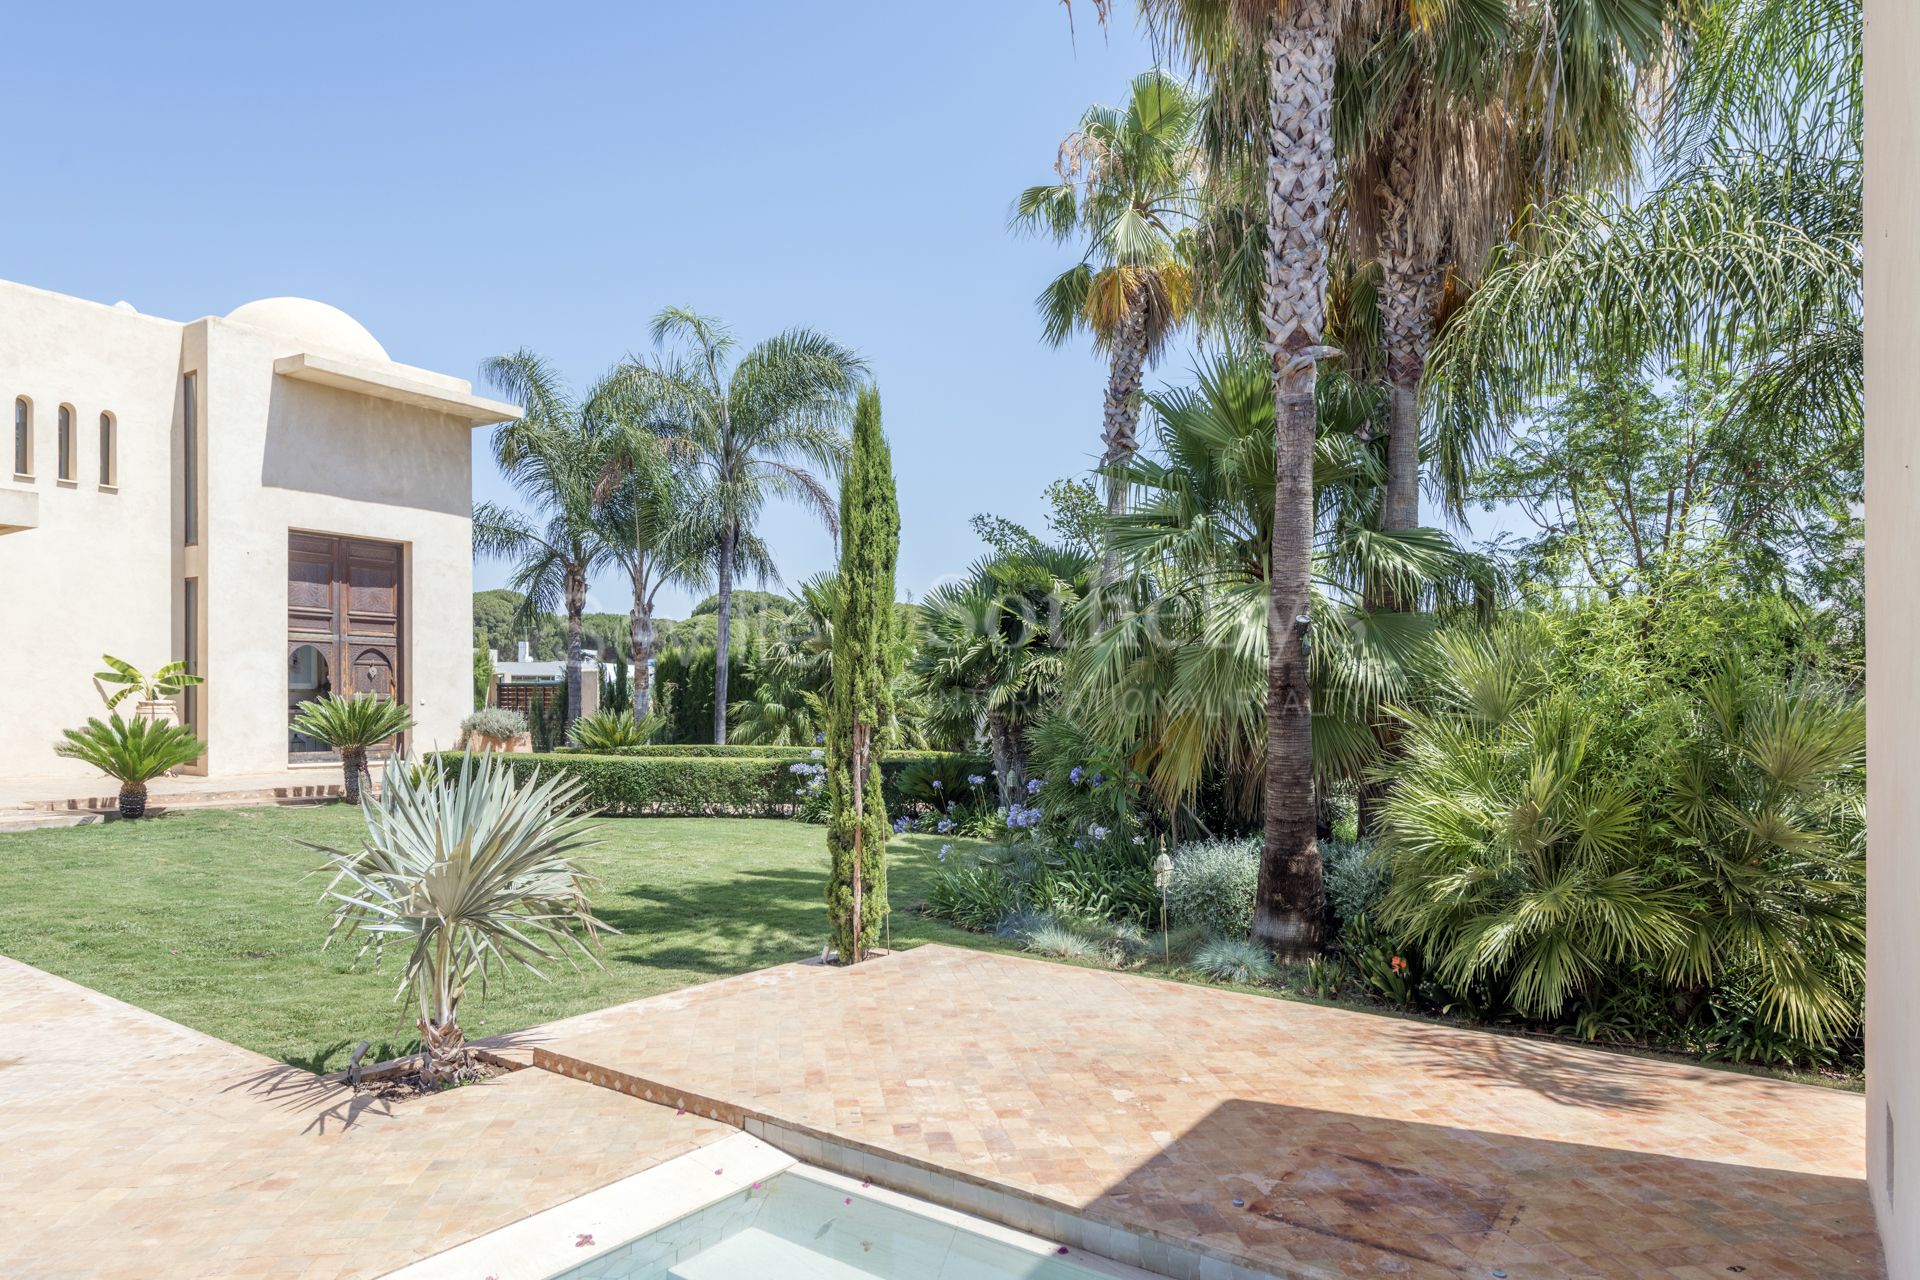 Casa super exclusiva con hammam y casa de Invitados. Un oasis natural en Sevilla.